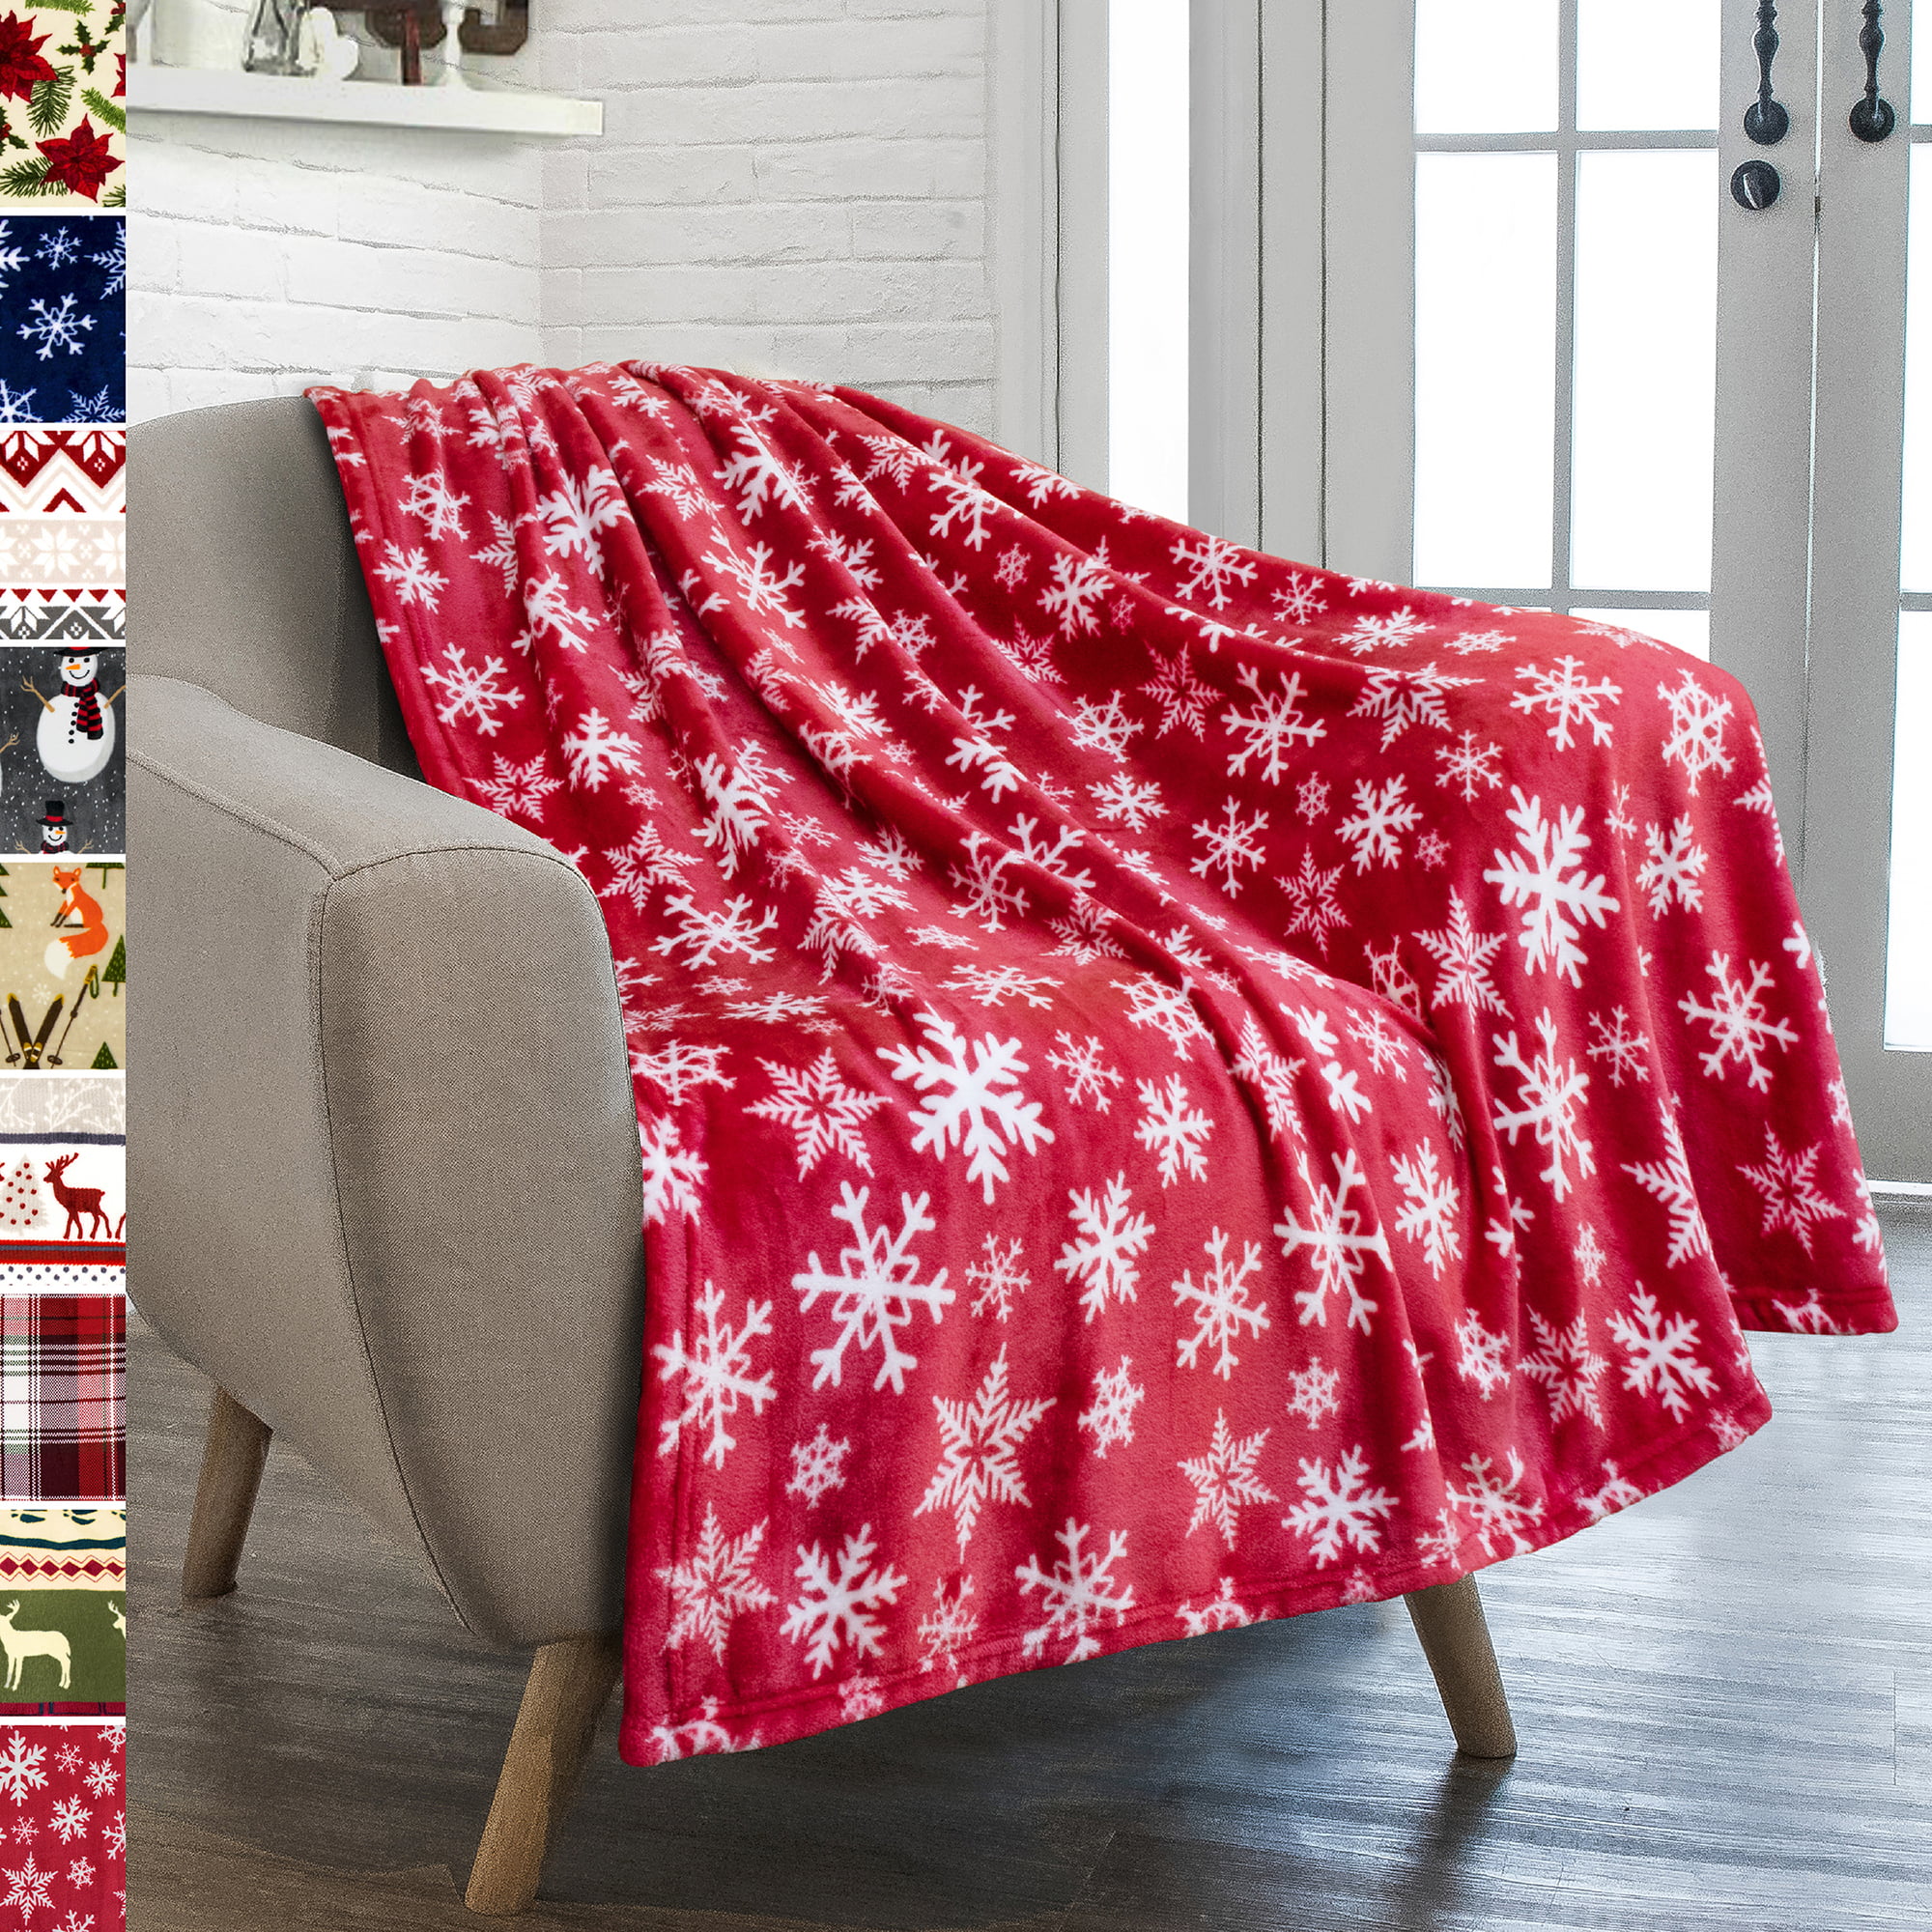 Christmas Home Decor Gray and White Lap Blanket| Twin Throw Winter Snowflake  Sofa Throw Cream Blanket Seasonal Throw Blanket